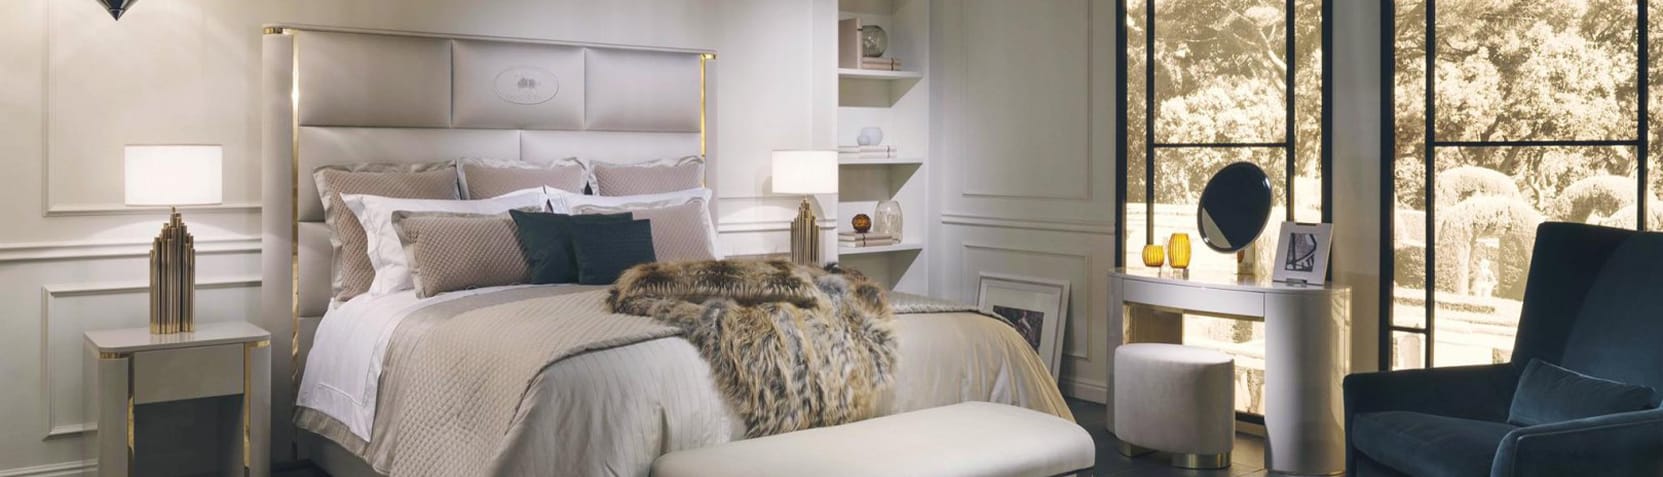 Yatak Odası | Elano Luxury Furniture - Masko - Modoko